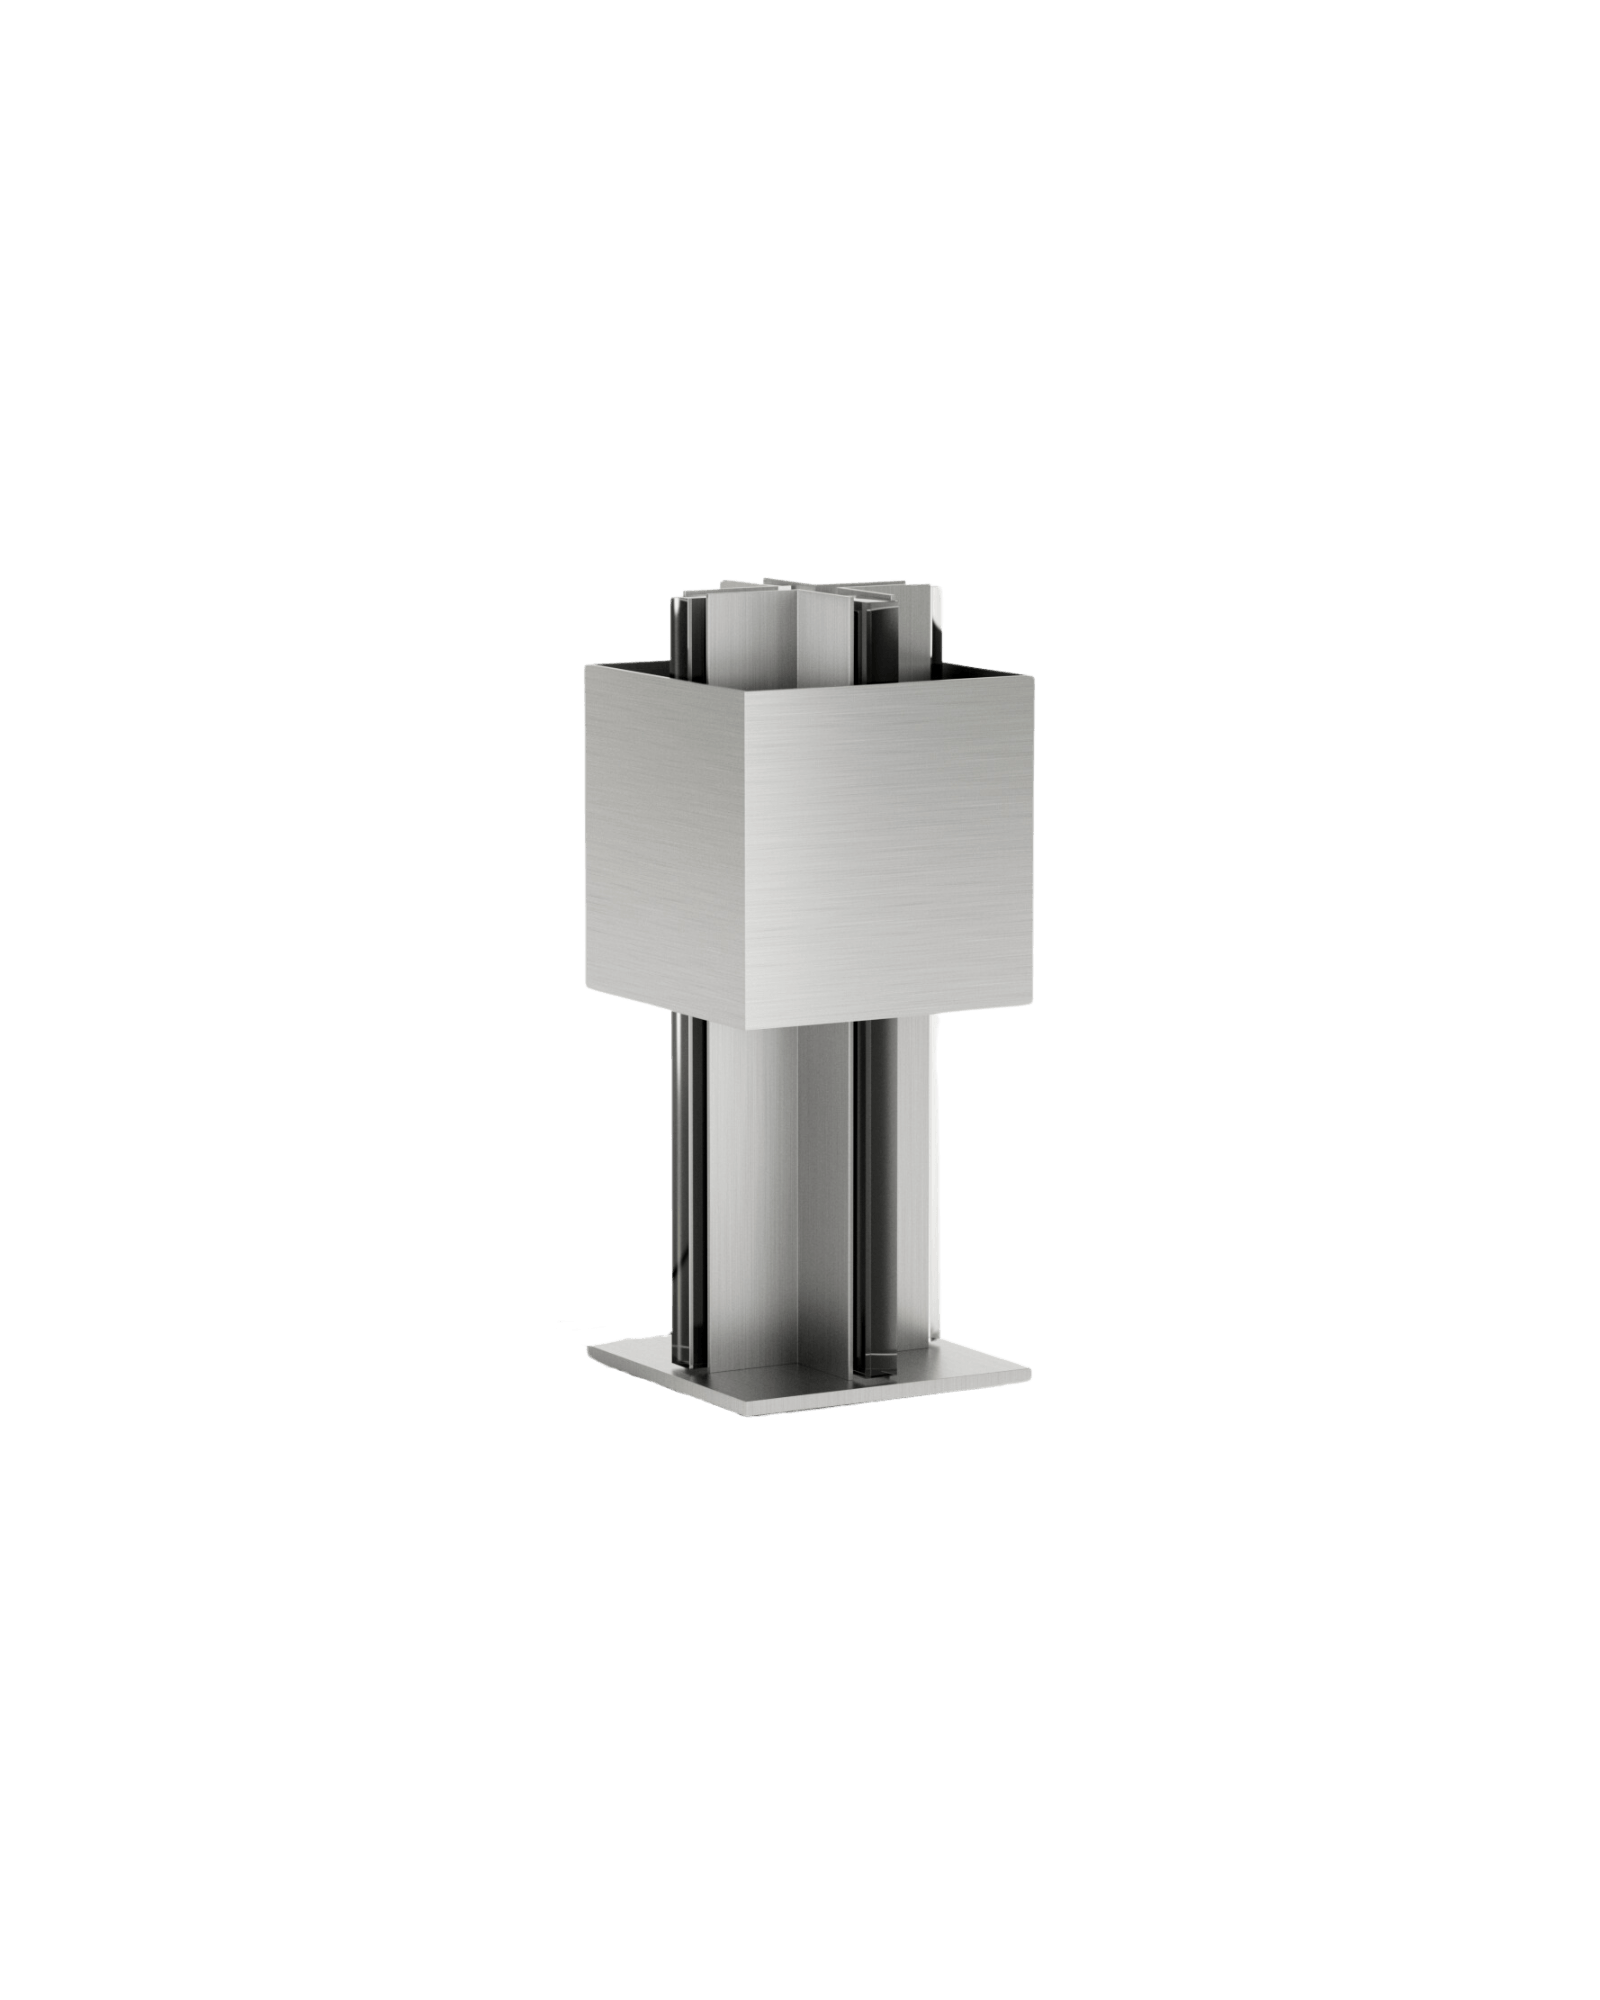 Studioutte Stele Table Lampe M for Monde Singulier